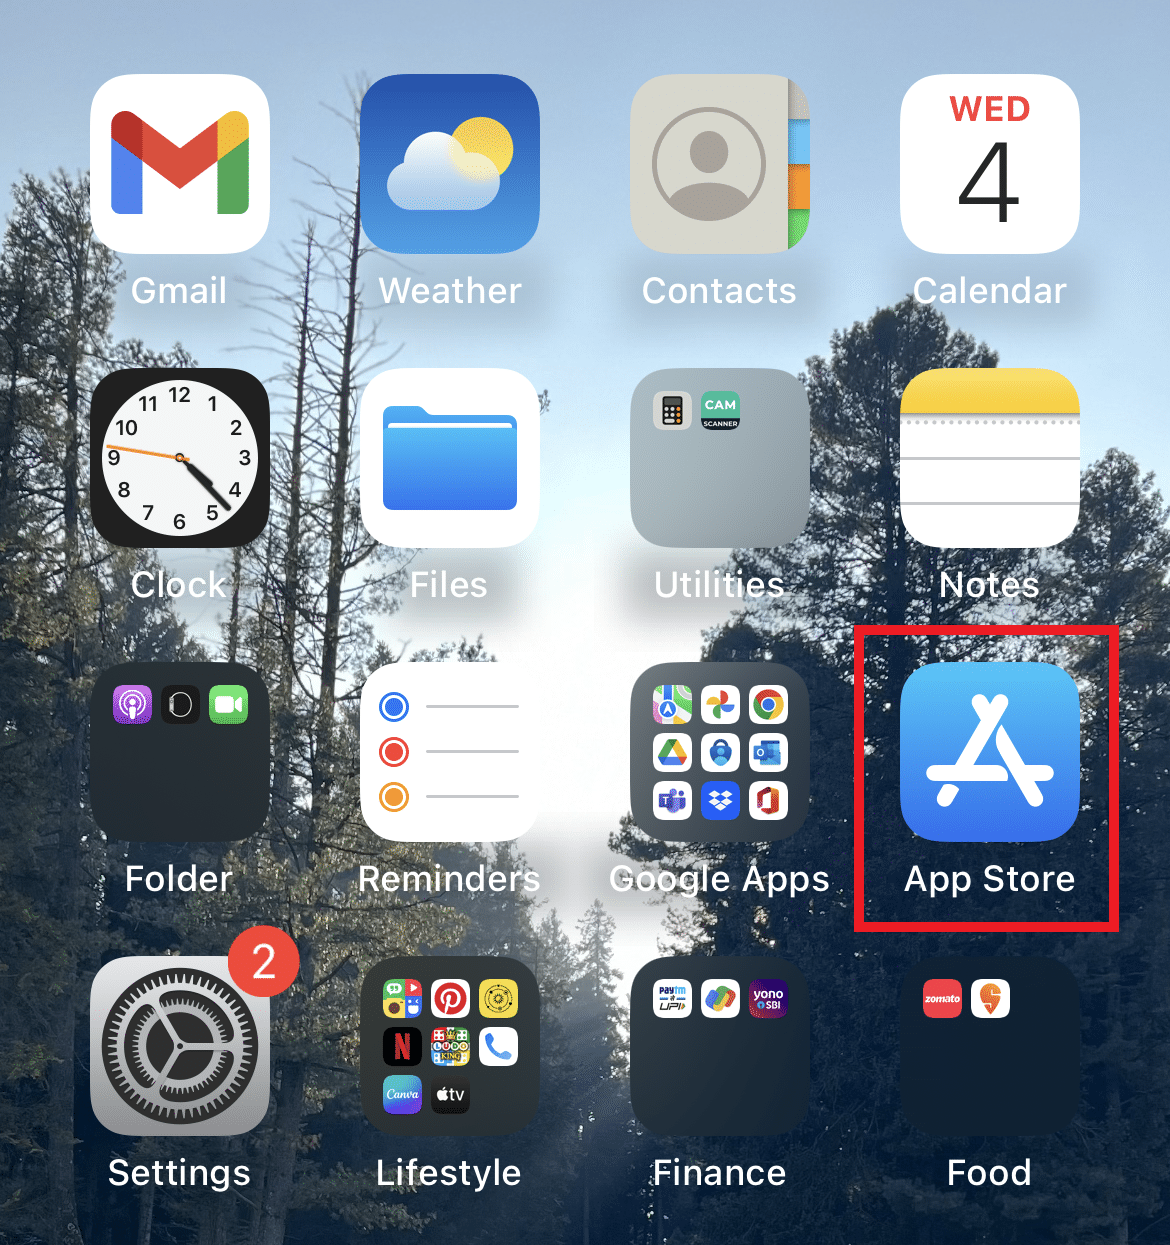 Buka App Store